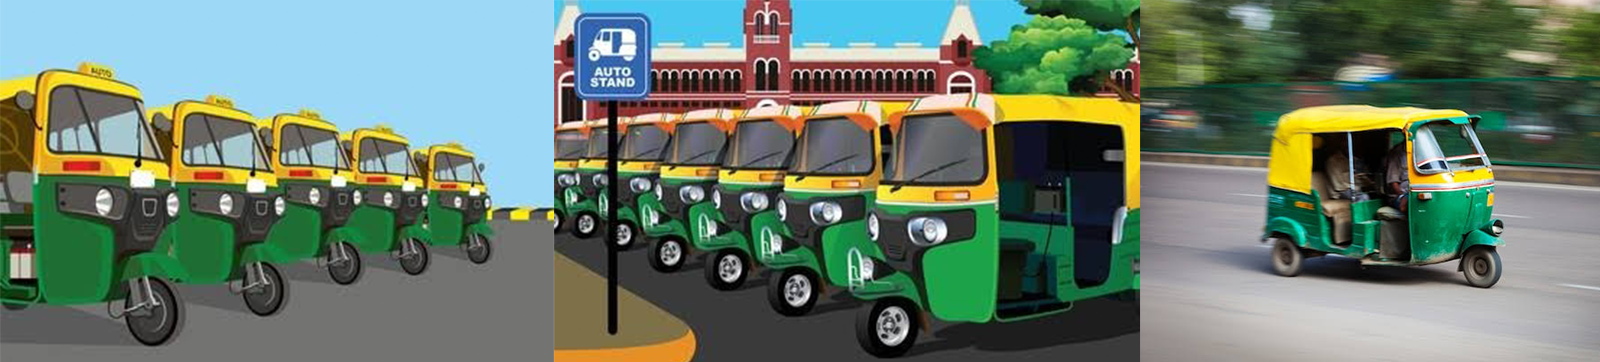 Auto-Rickshaws in Chandigarh to Get Designated Parking Stands